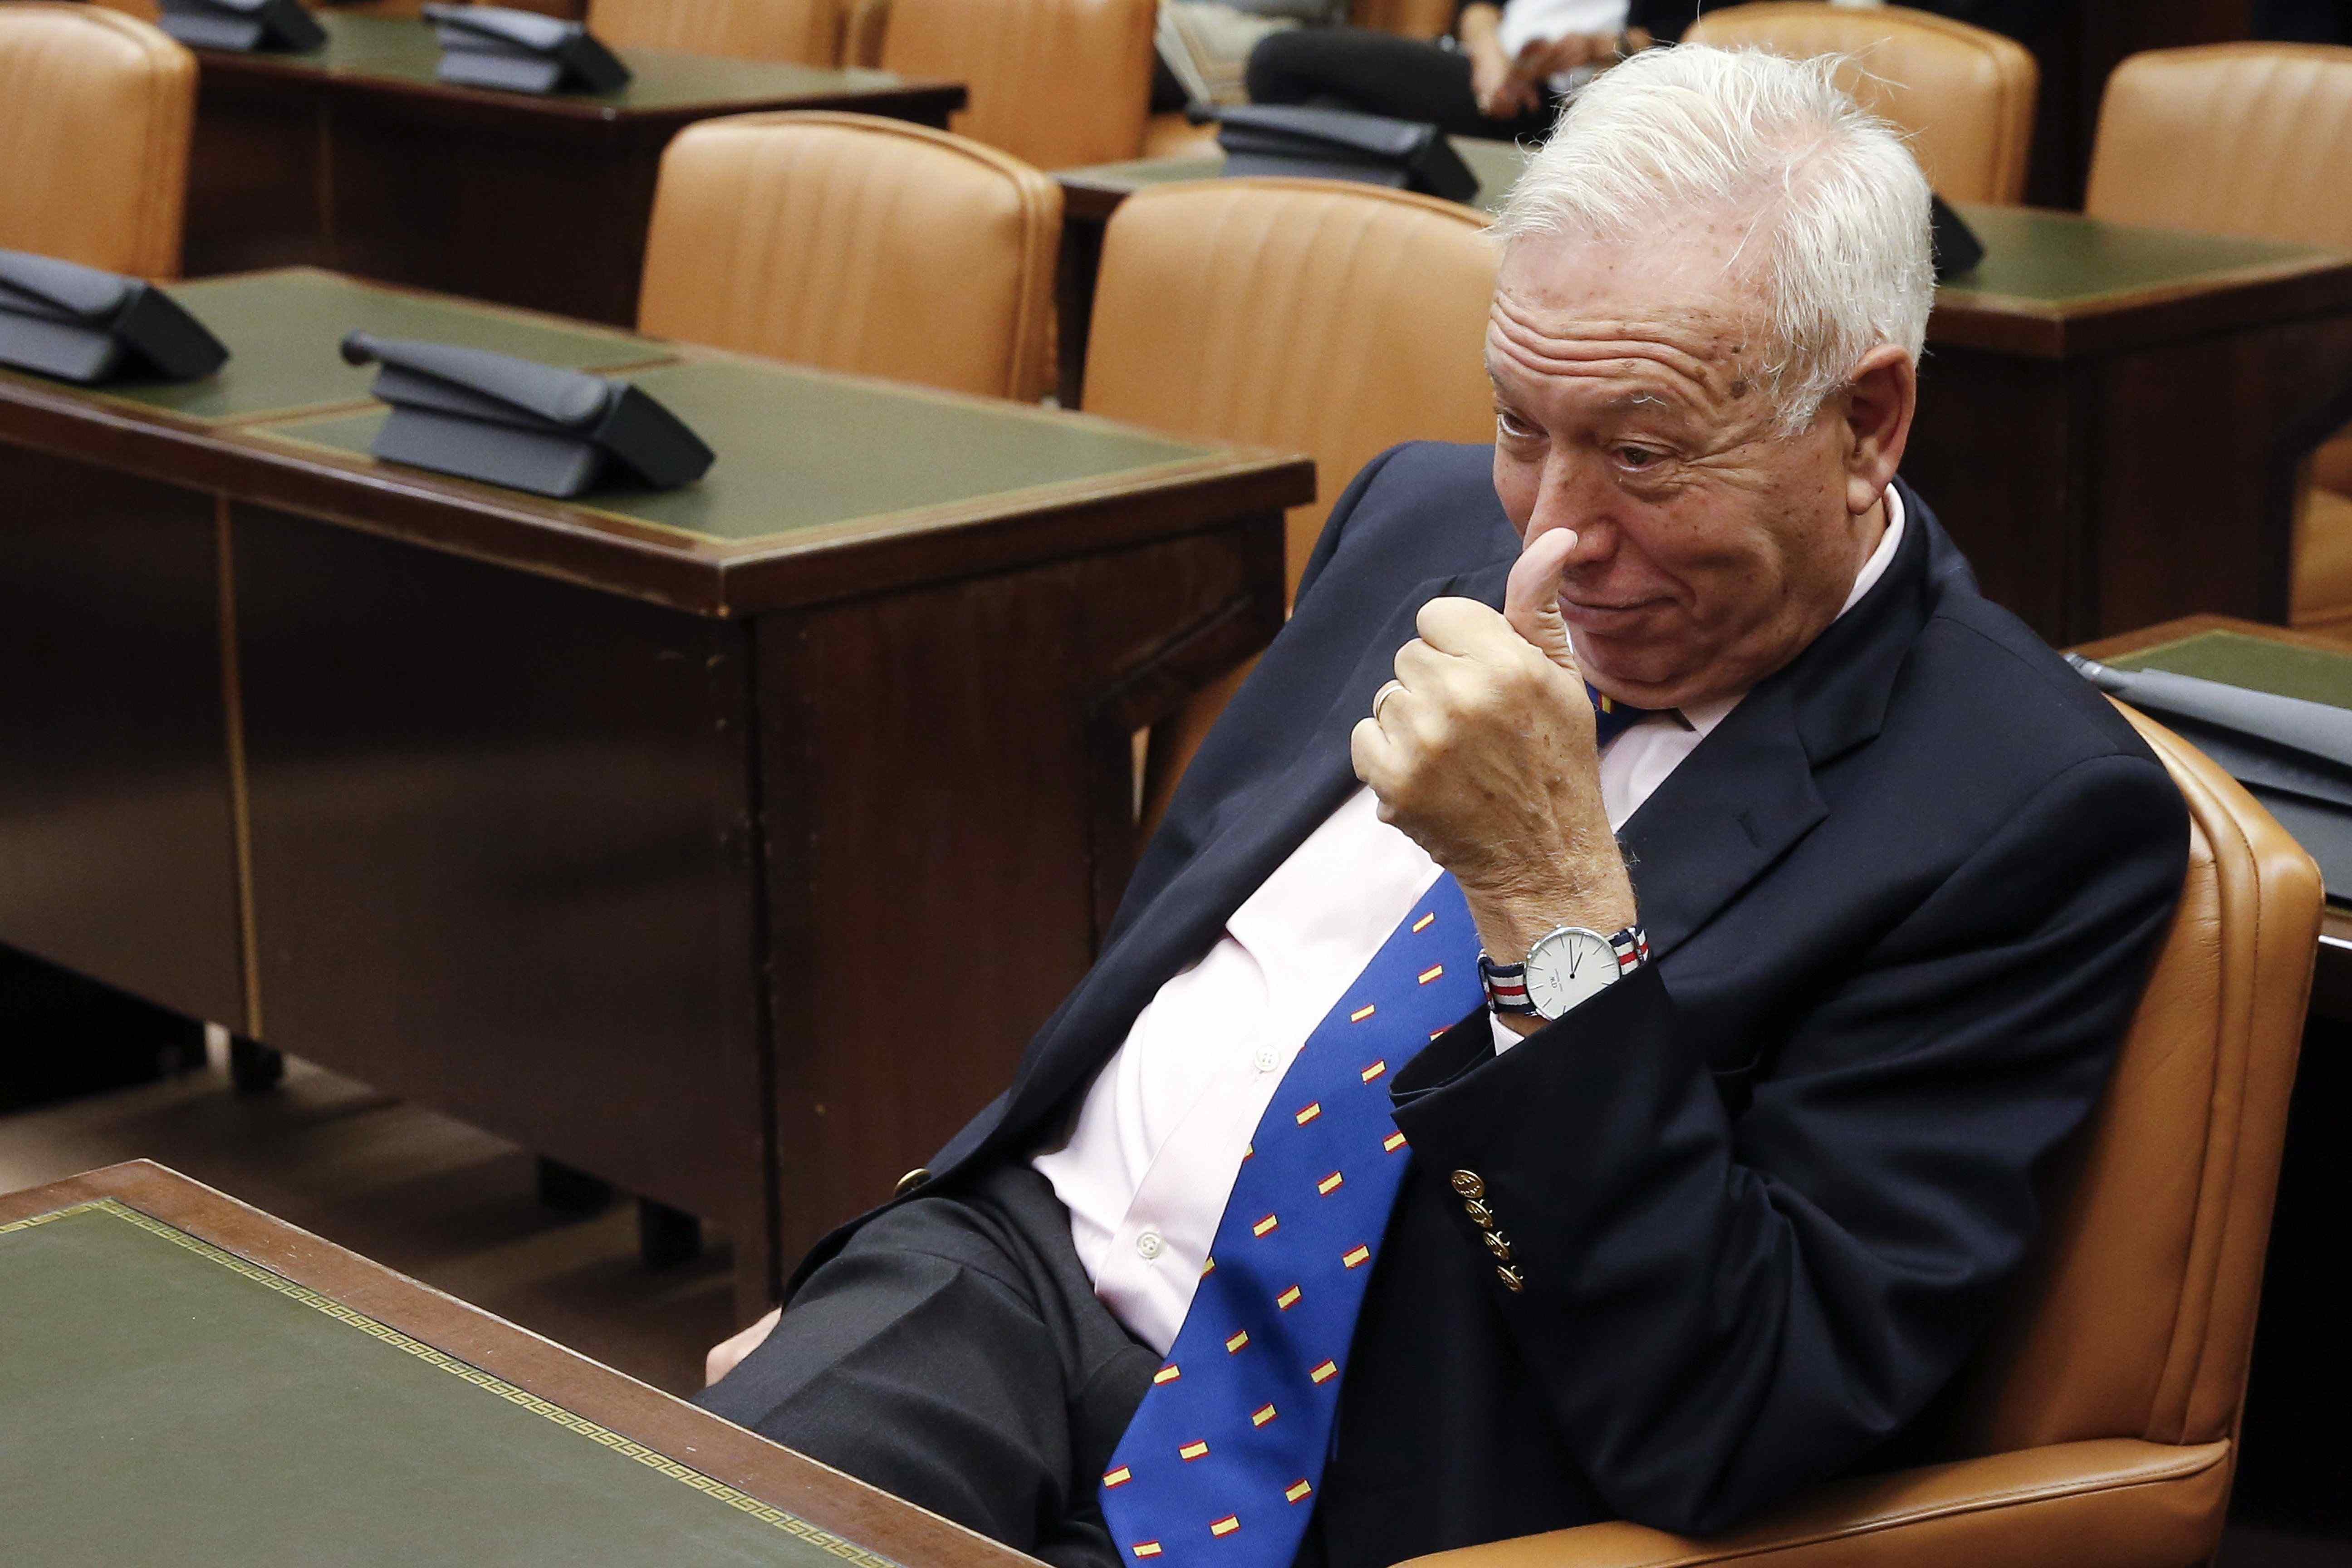 El Estado dice ahora que los favores de Margallo eran muestras de "amistad" entre países